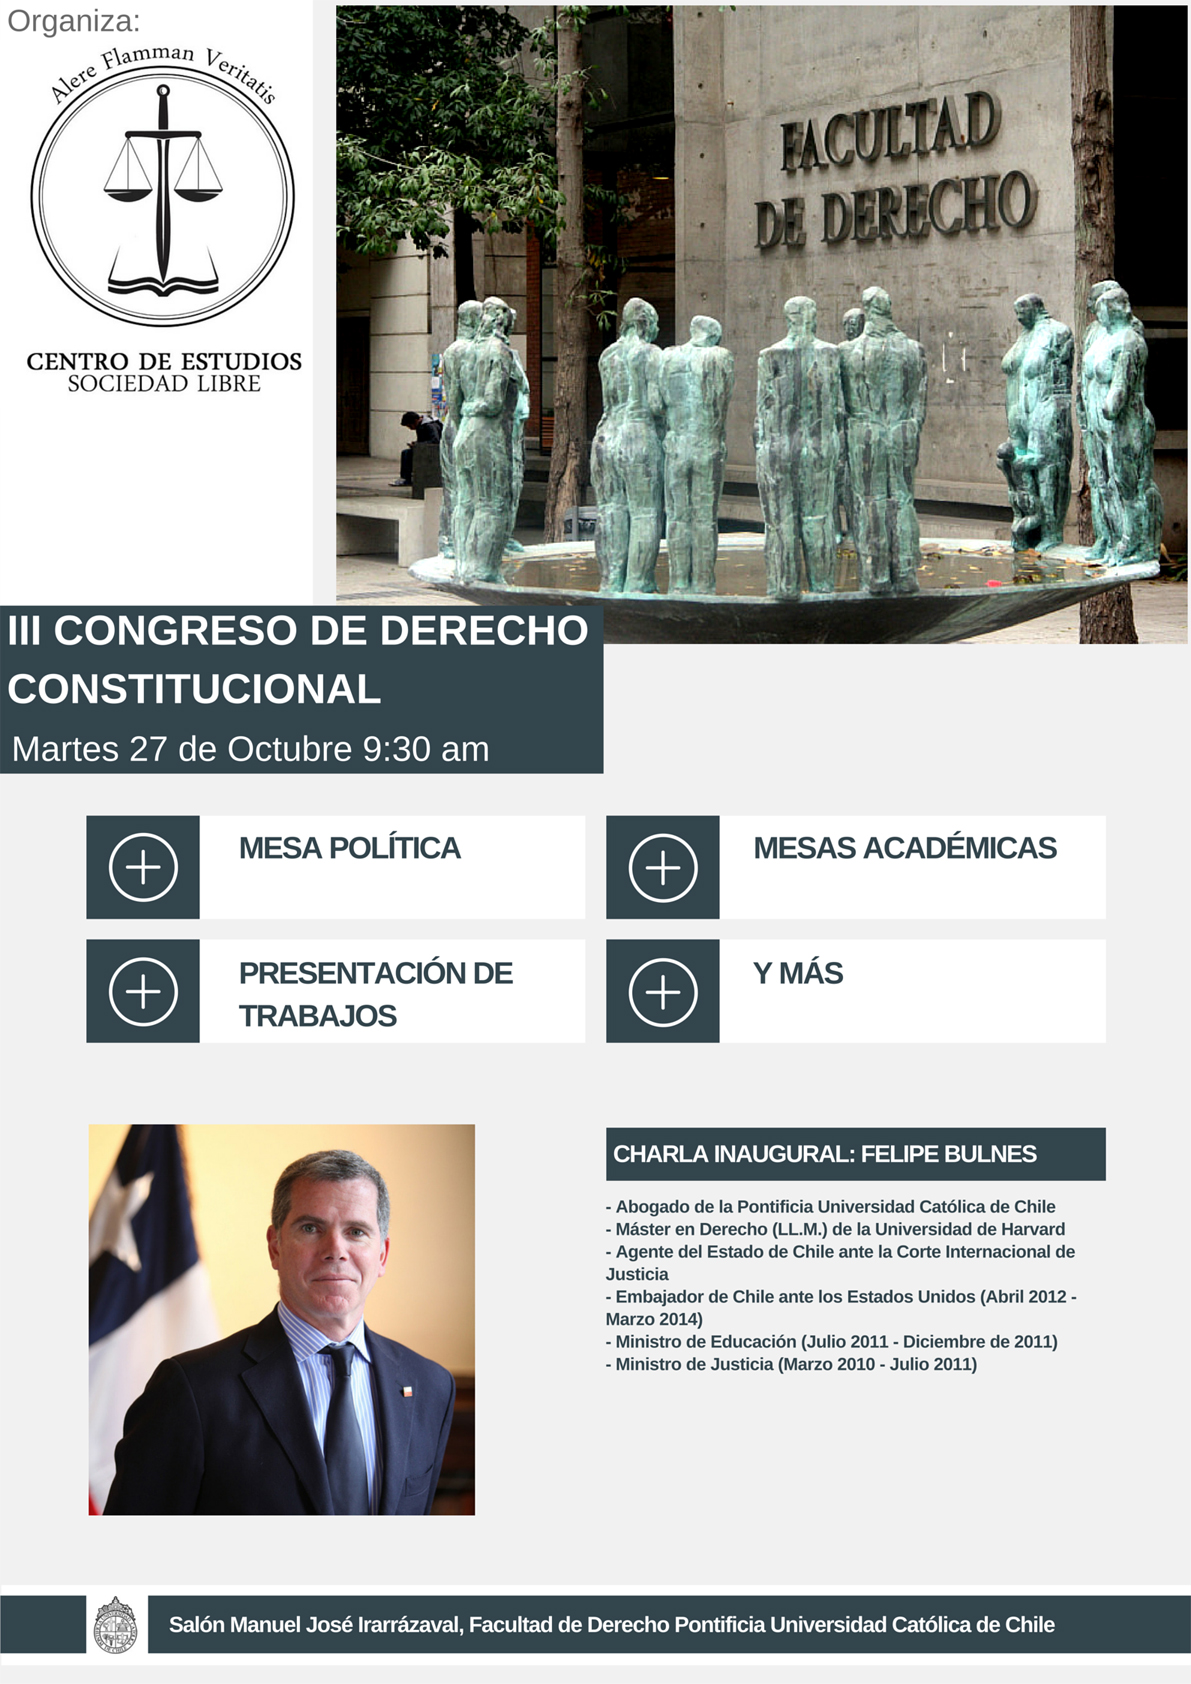 III Congreso de Derecho Constitucional CESL agenda interior